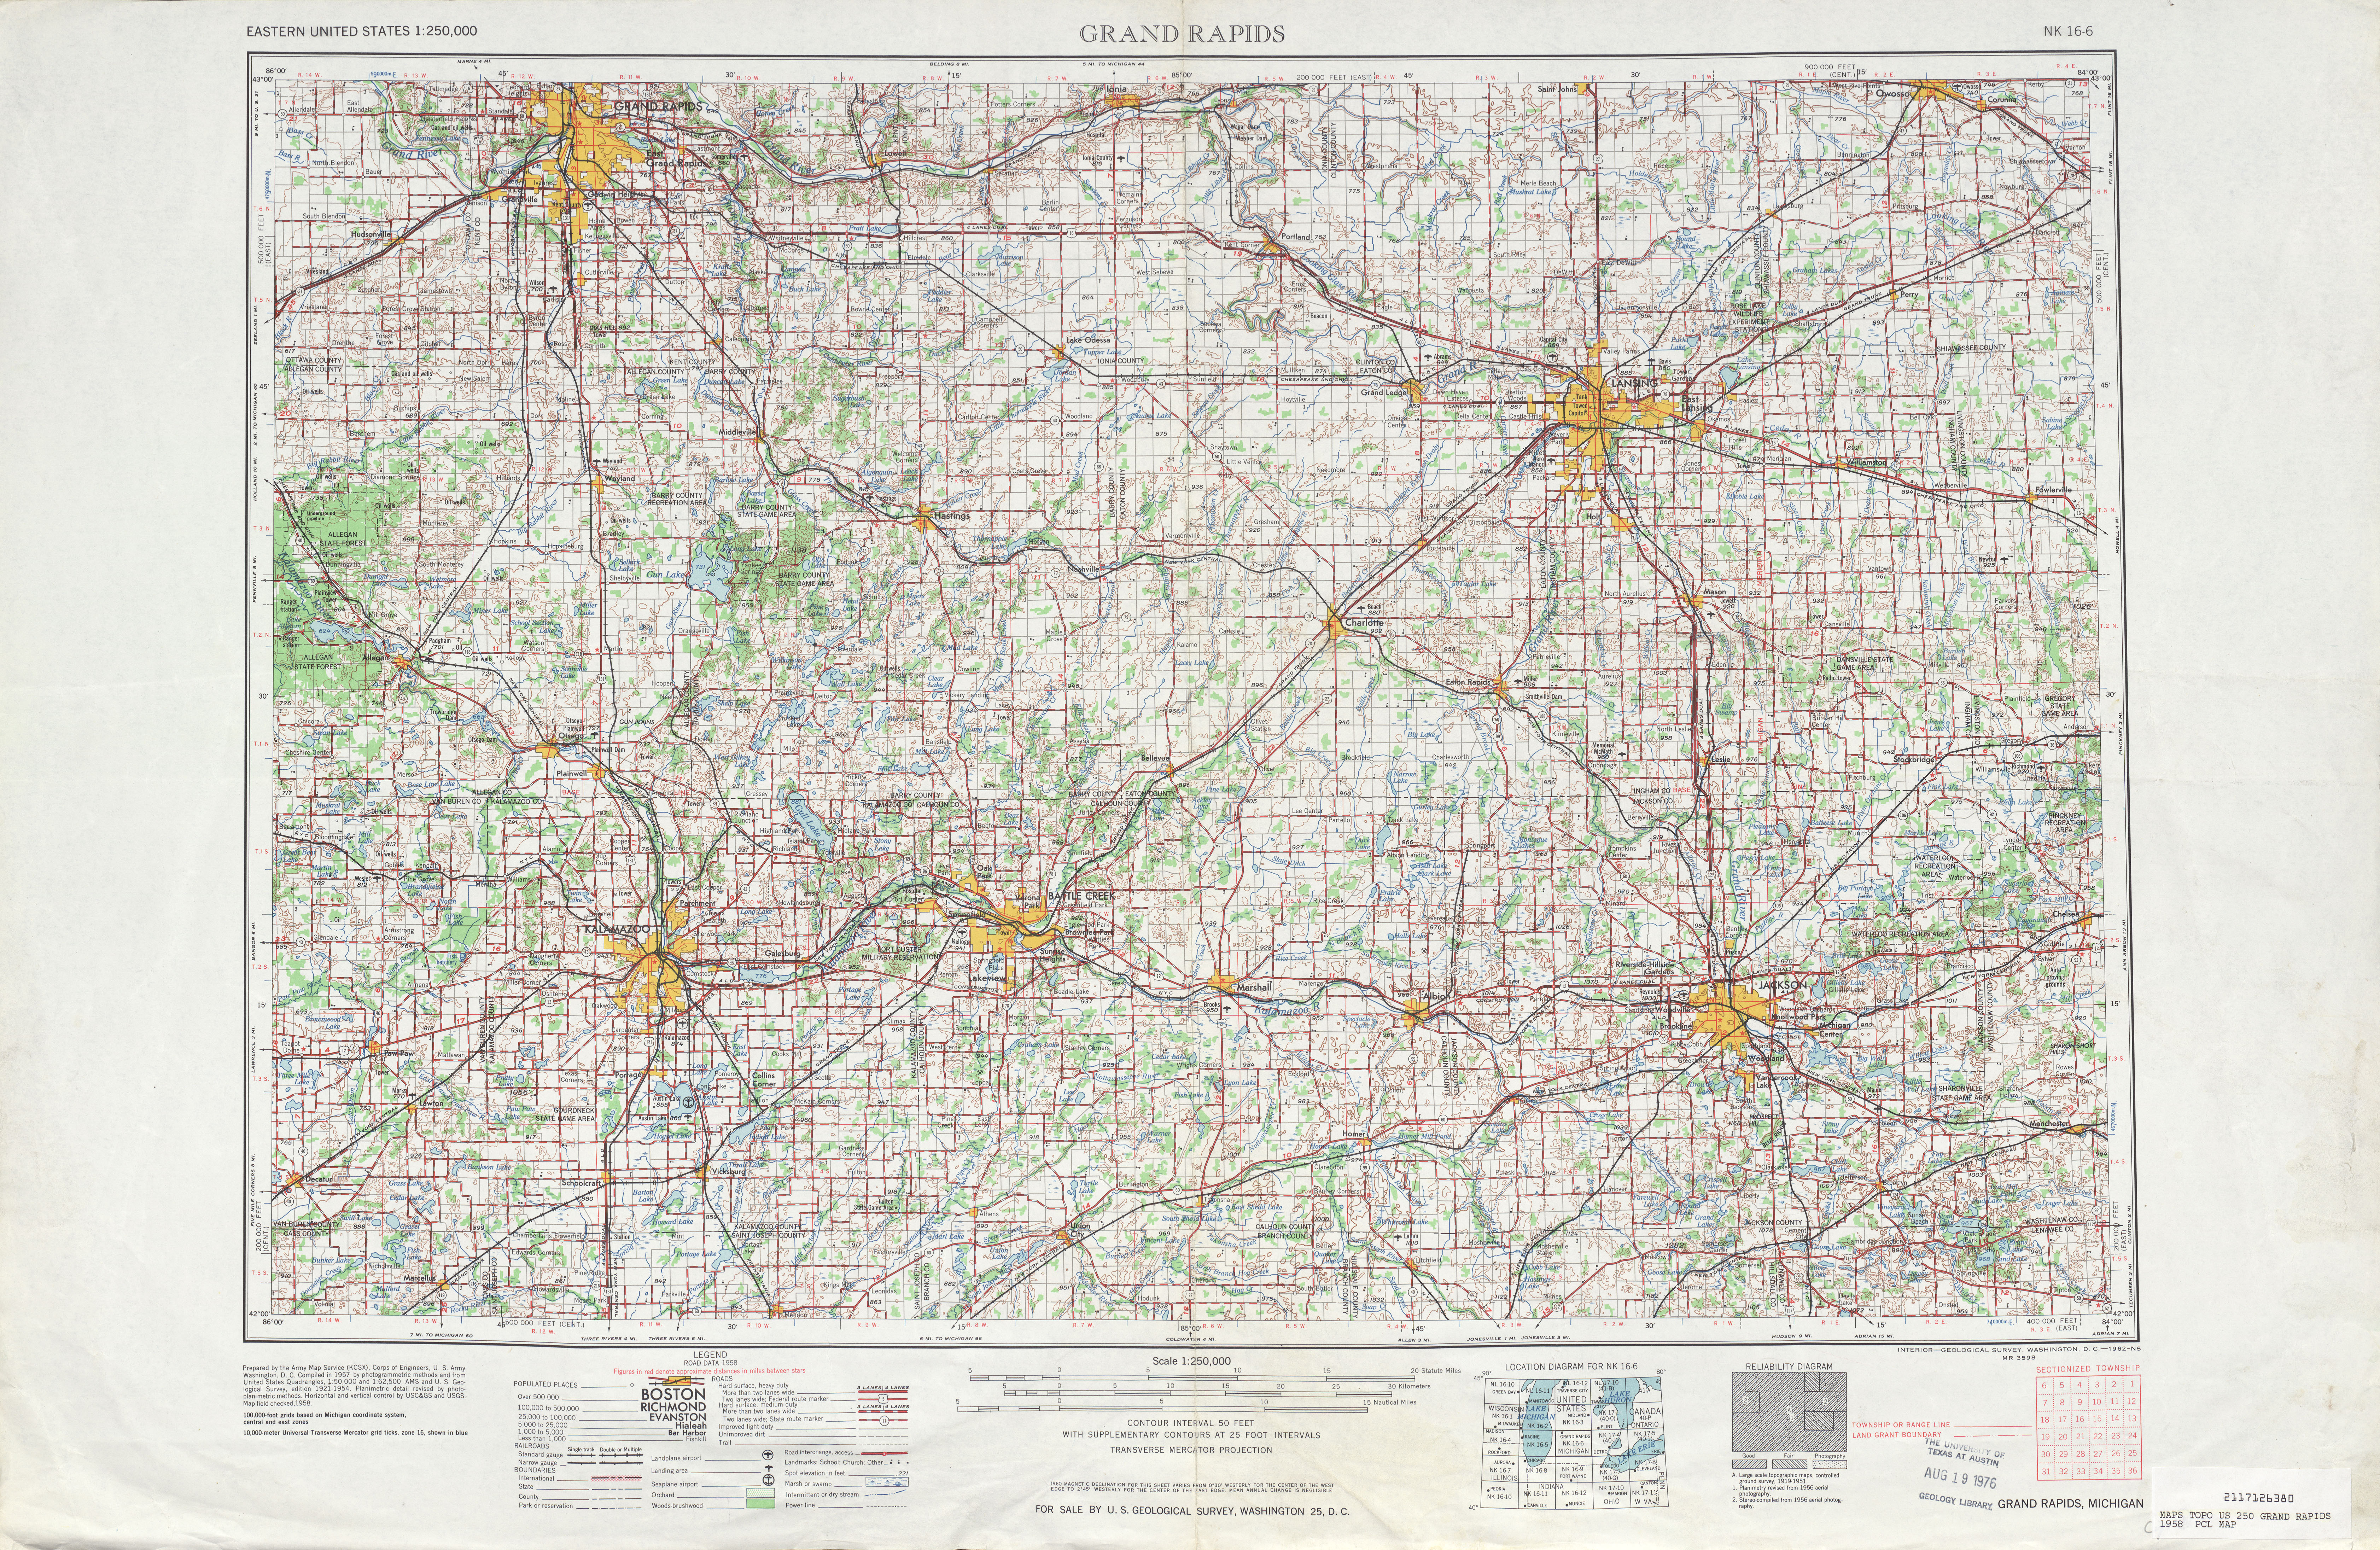 Hoja Grand Rapids del Mapa Topográfico de los Estados Unidos 1958